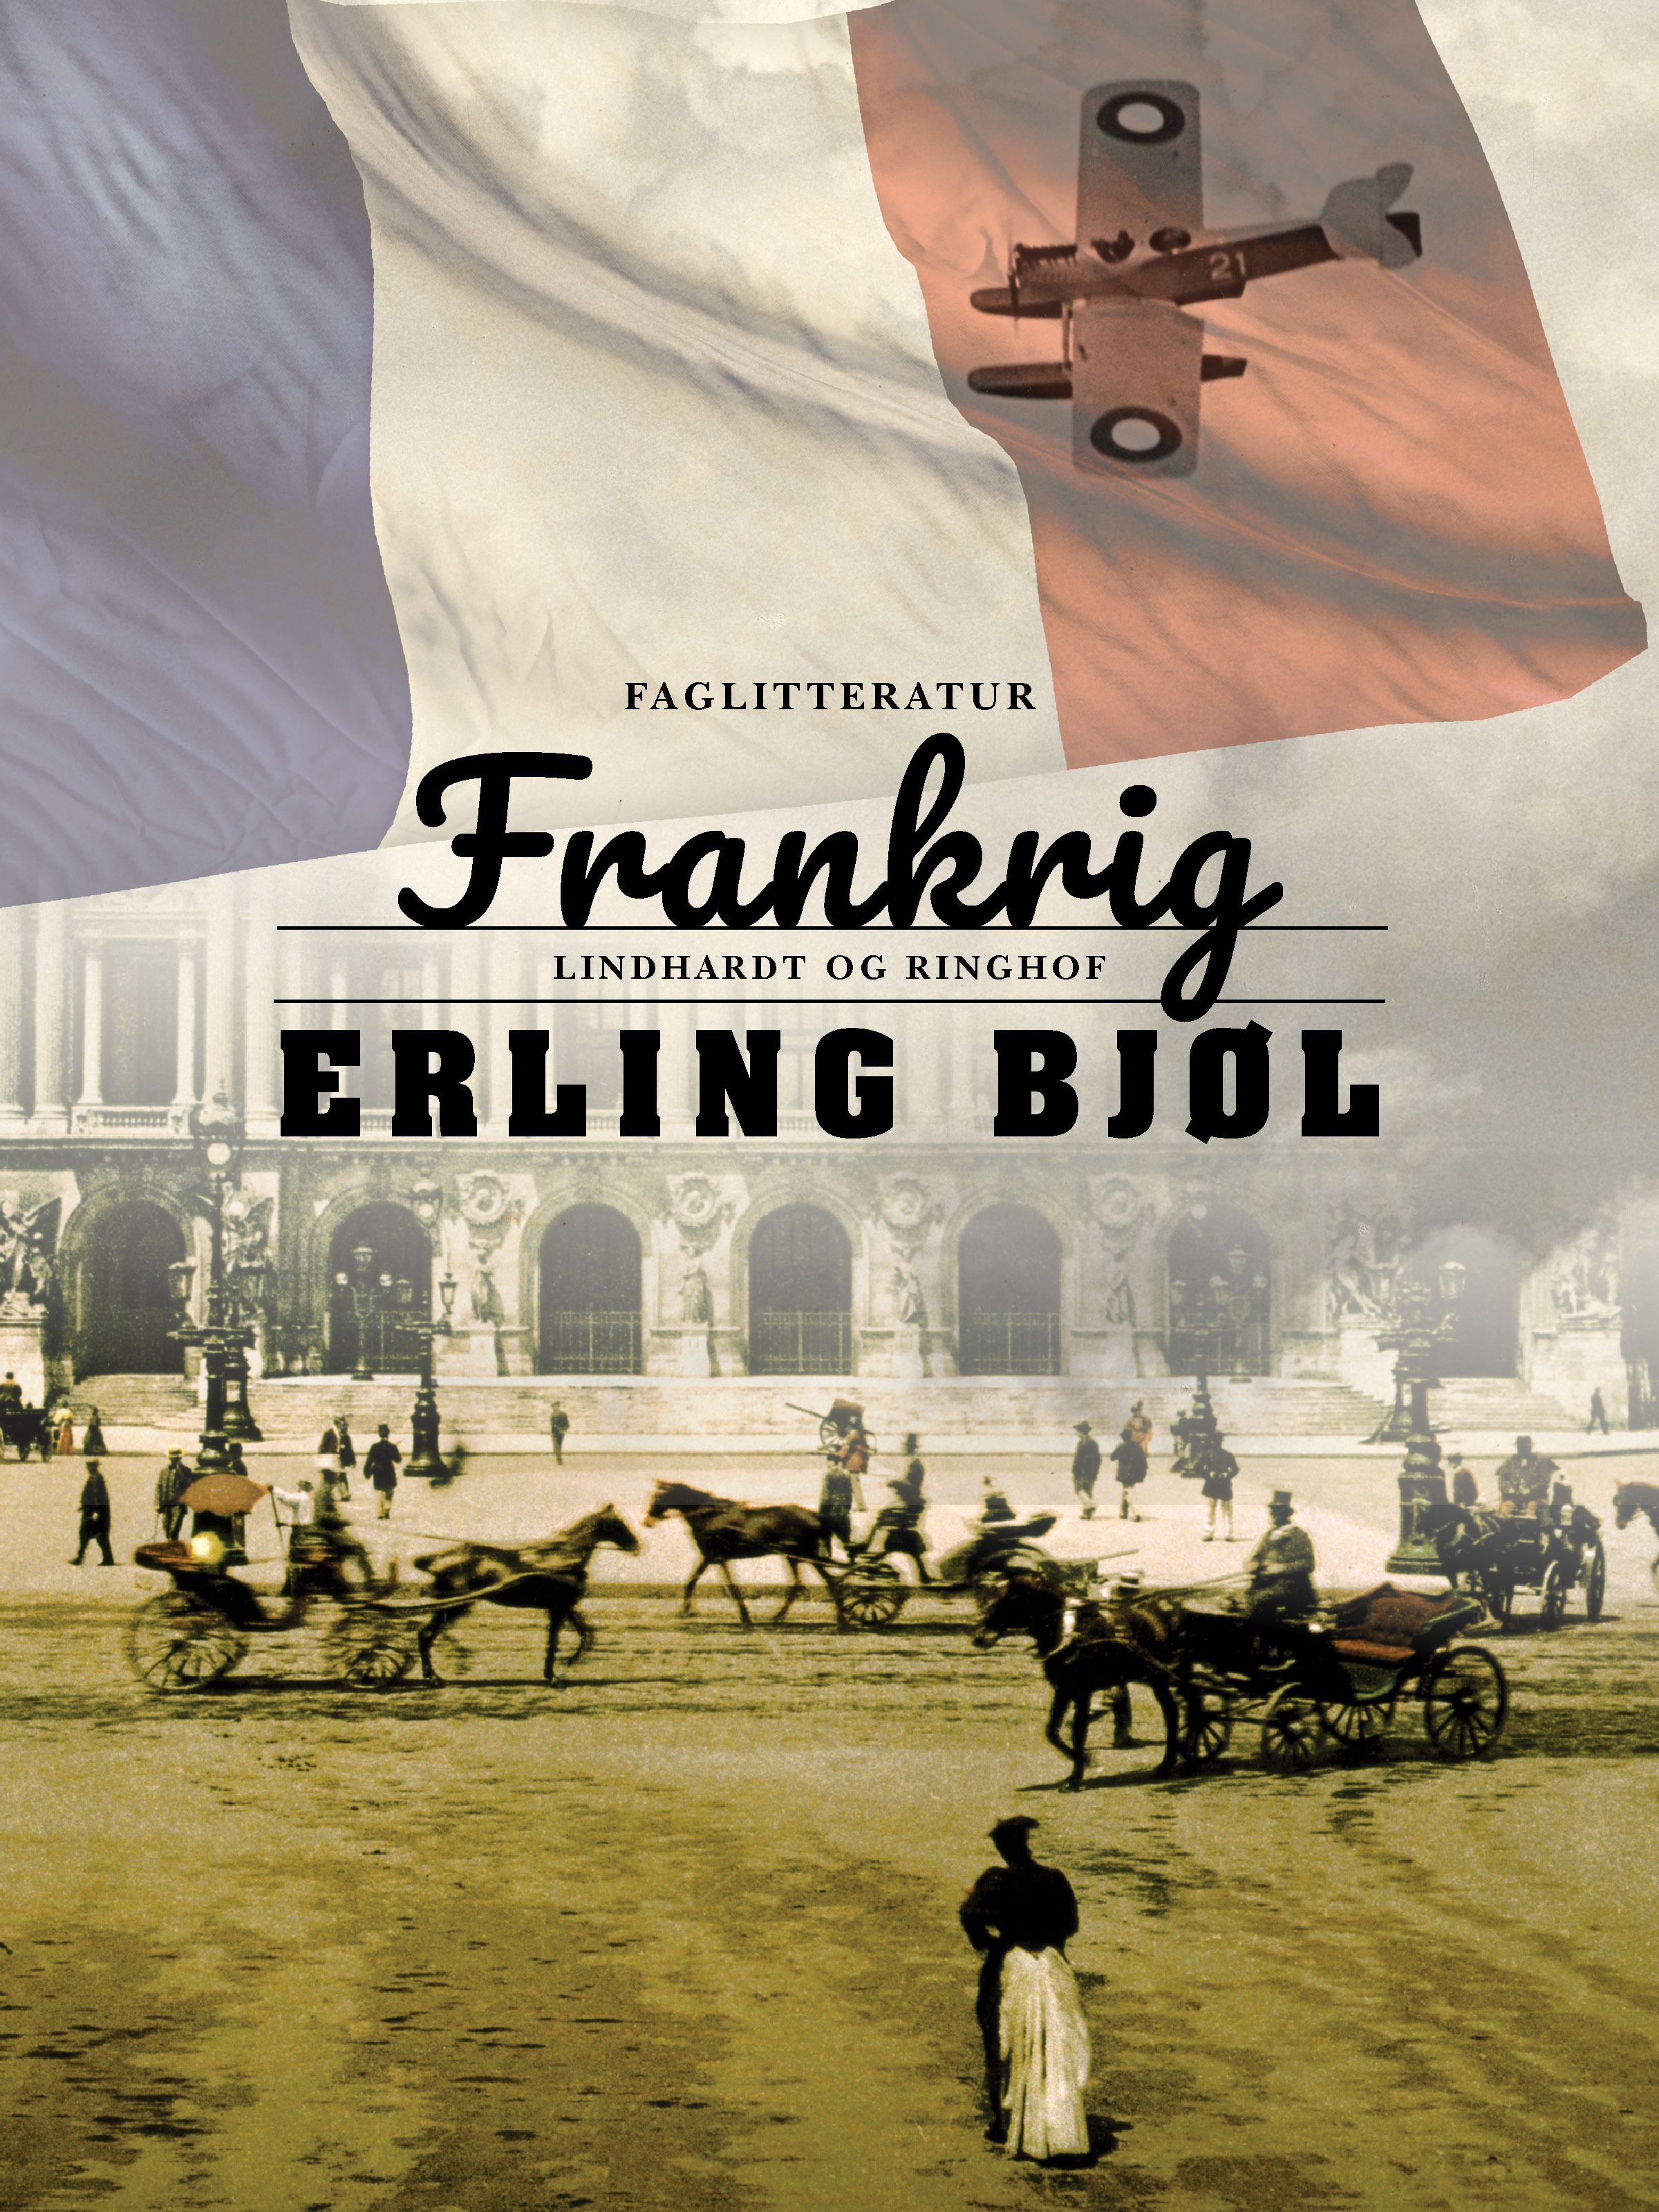 Frankrig, e-bog af Erling Bjøl